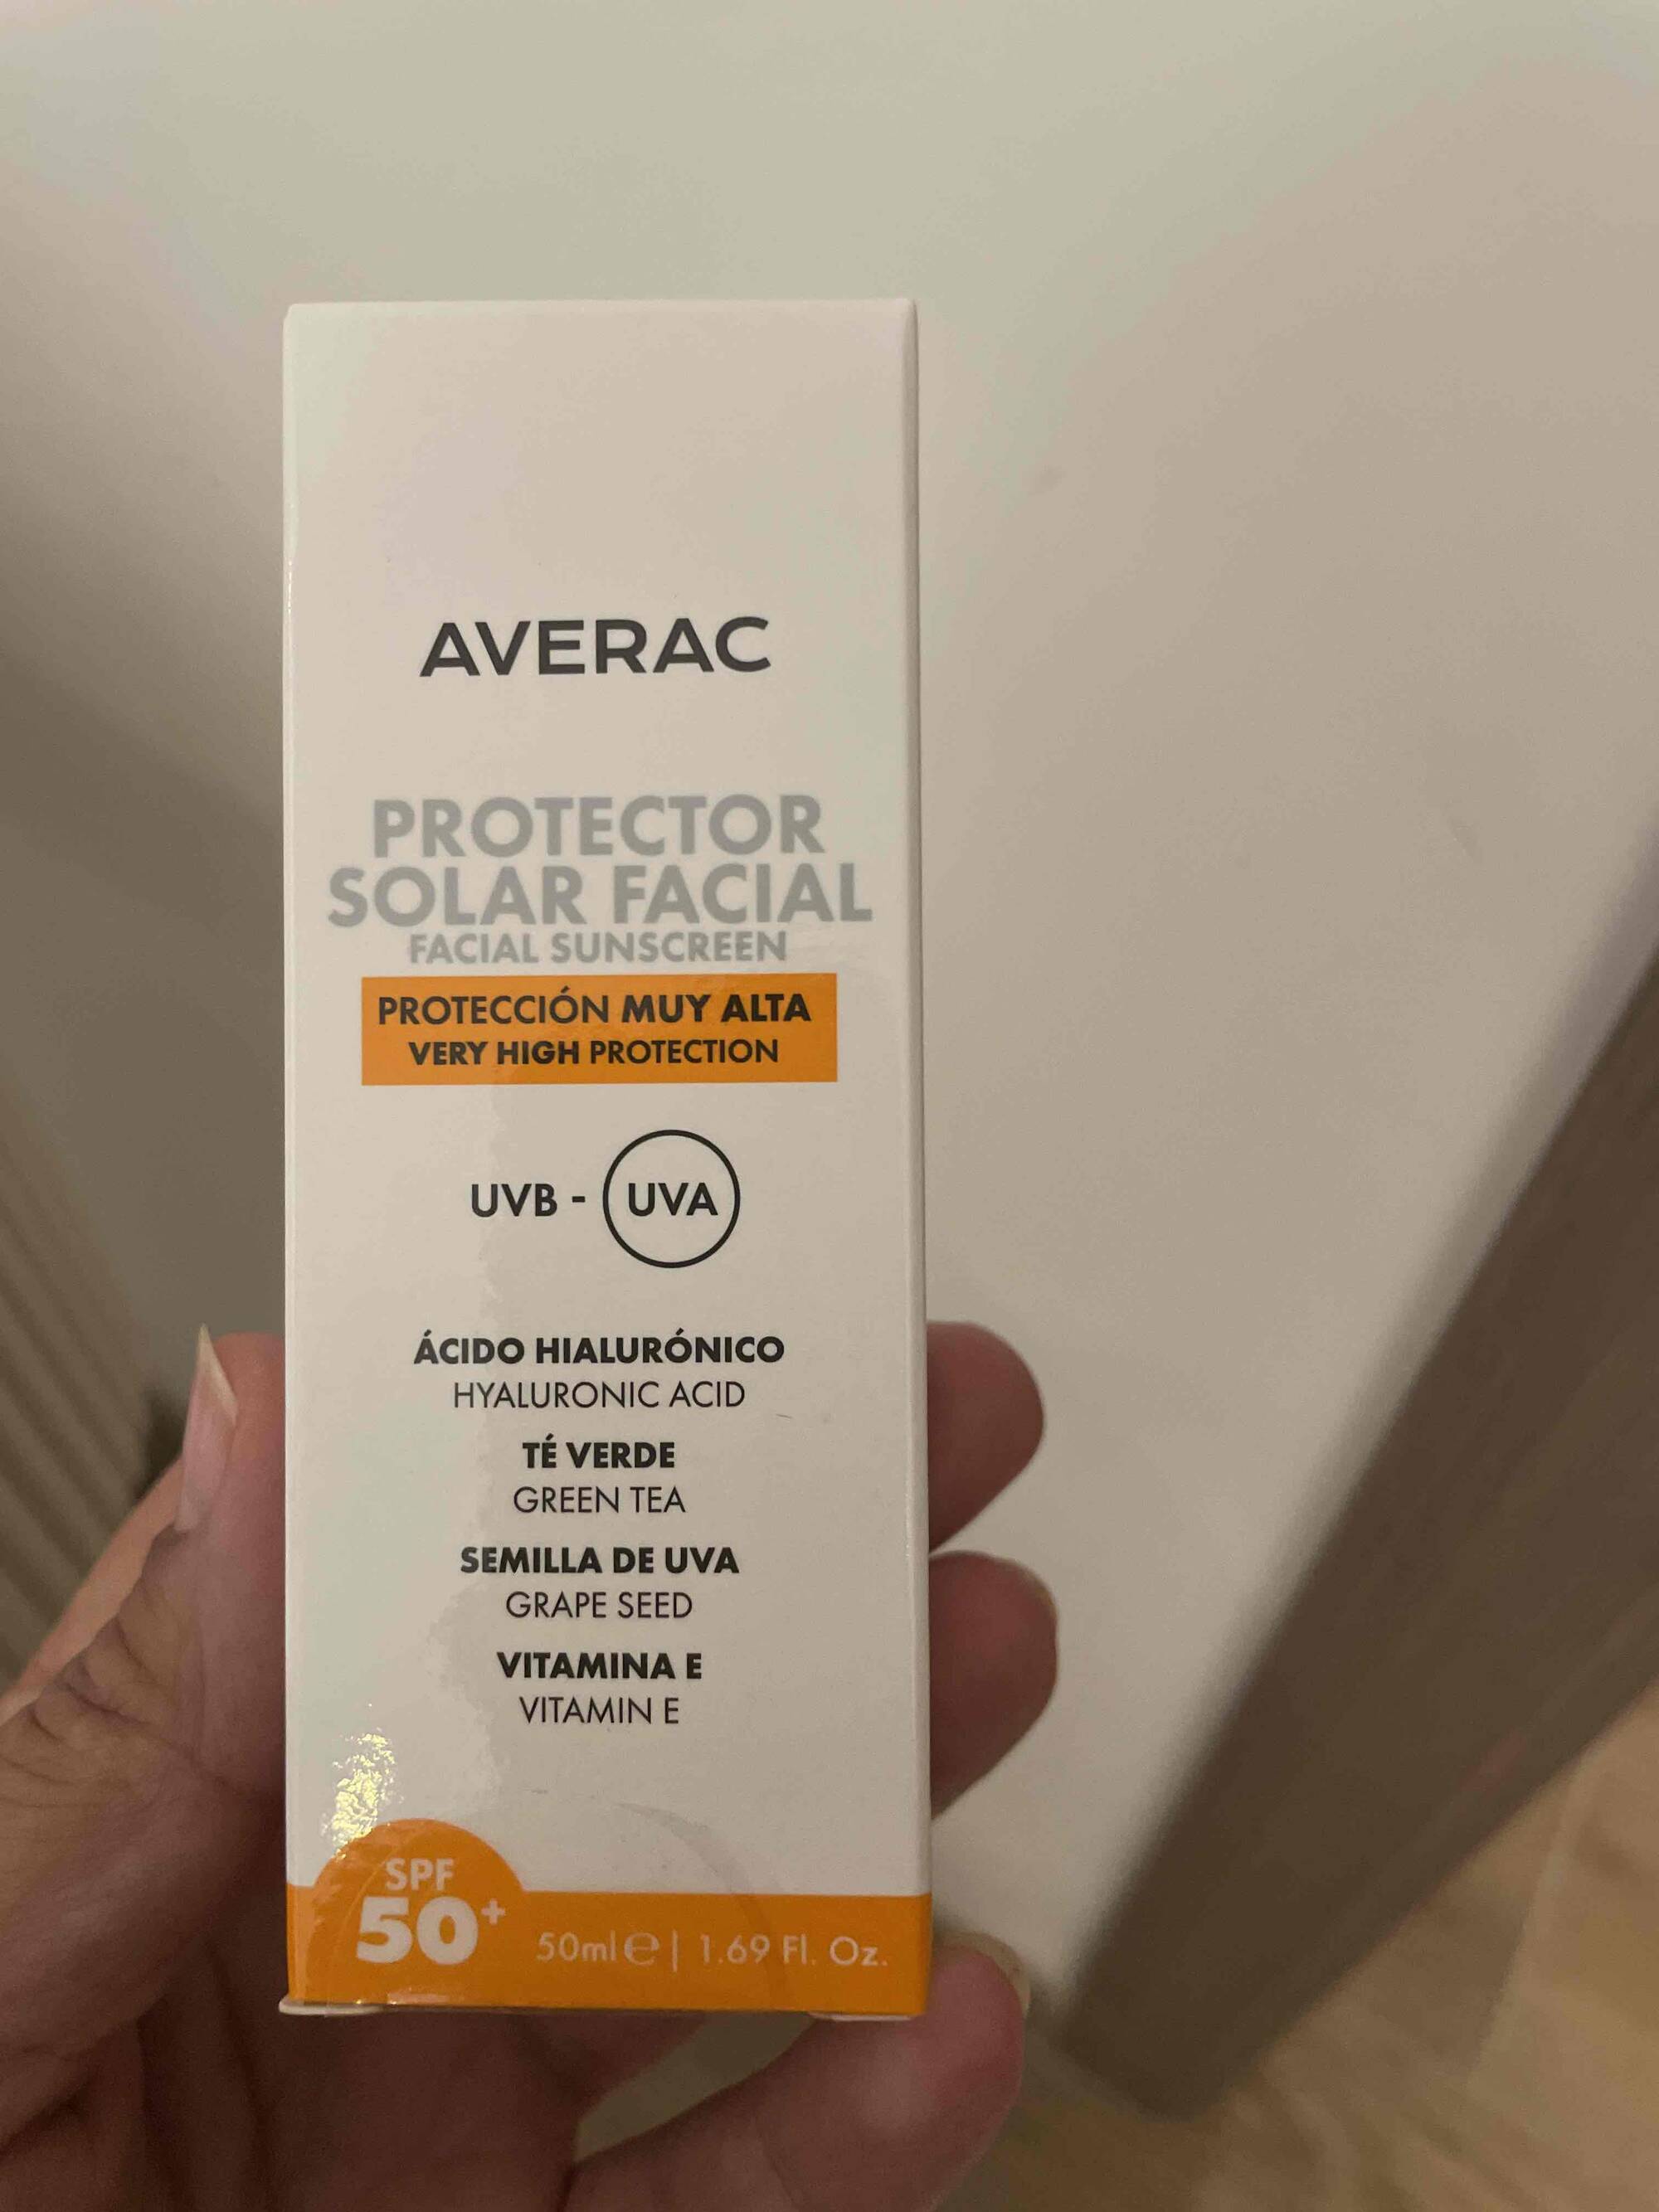 AVERAC - Protector solar facial - Sunscreen SPF 50+